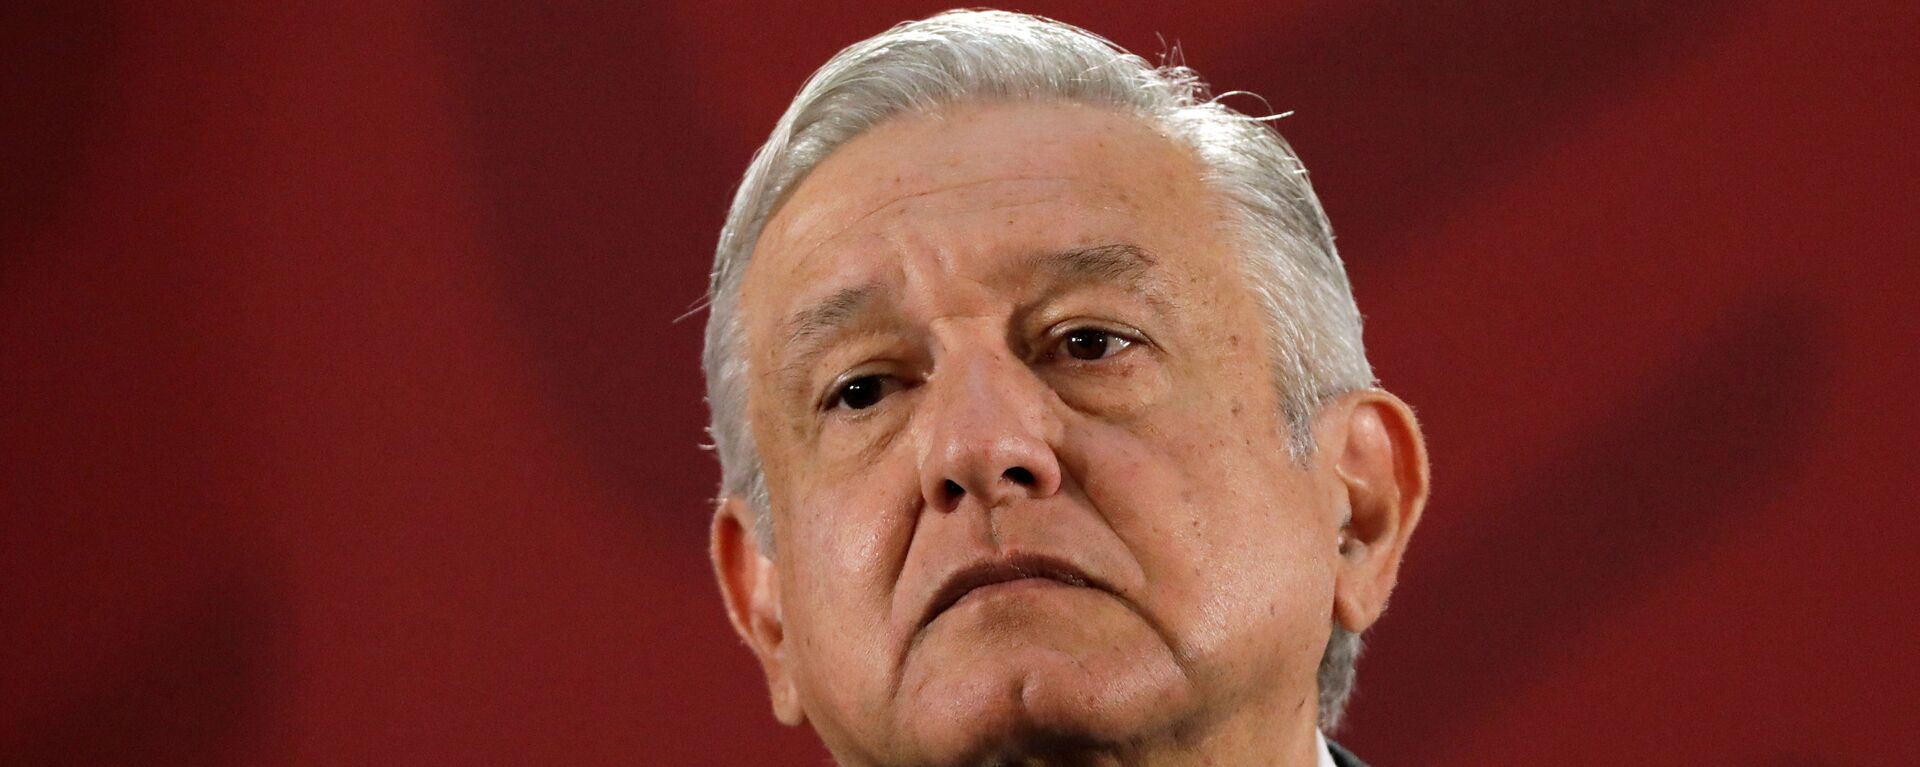 Andrés Manuel López Obrador, presidente de México - Sputnik Mundo, 1920, 03.12.2019